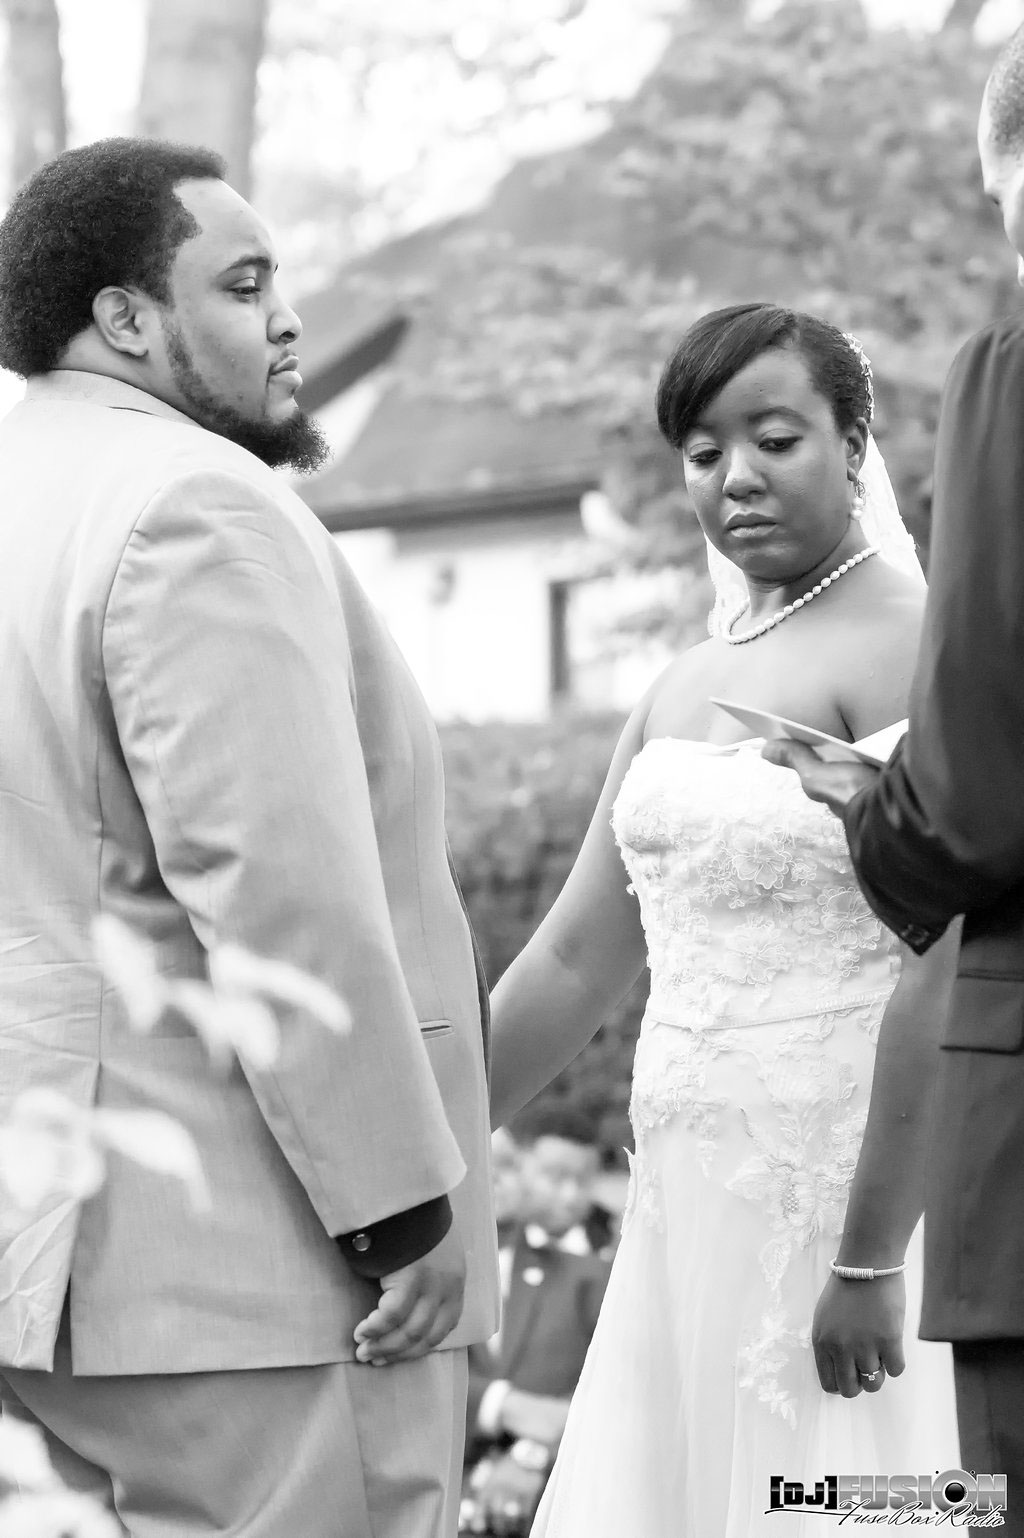 Wedding Photography wedding outdoor photography bridal photography groom photography DJ Fusion FuseBox Radio Photography